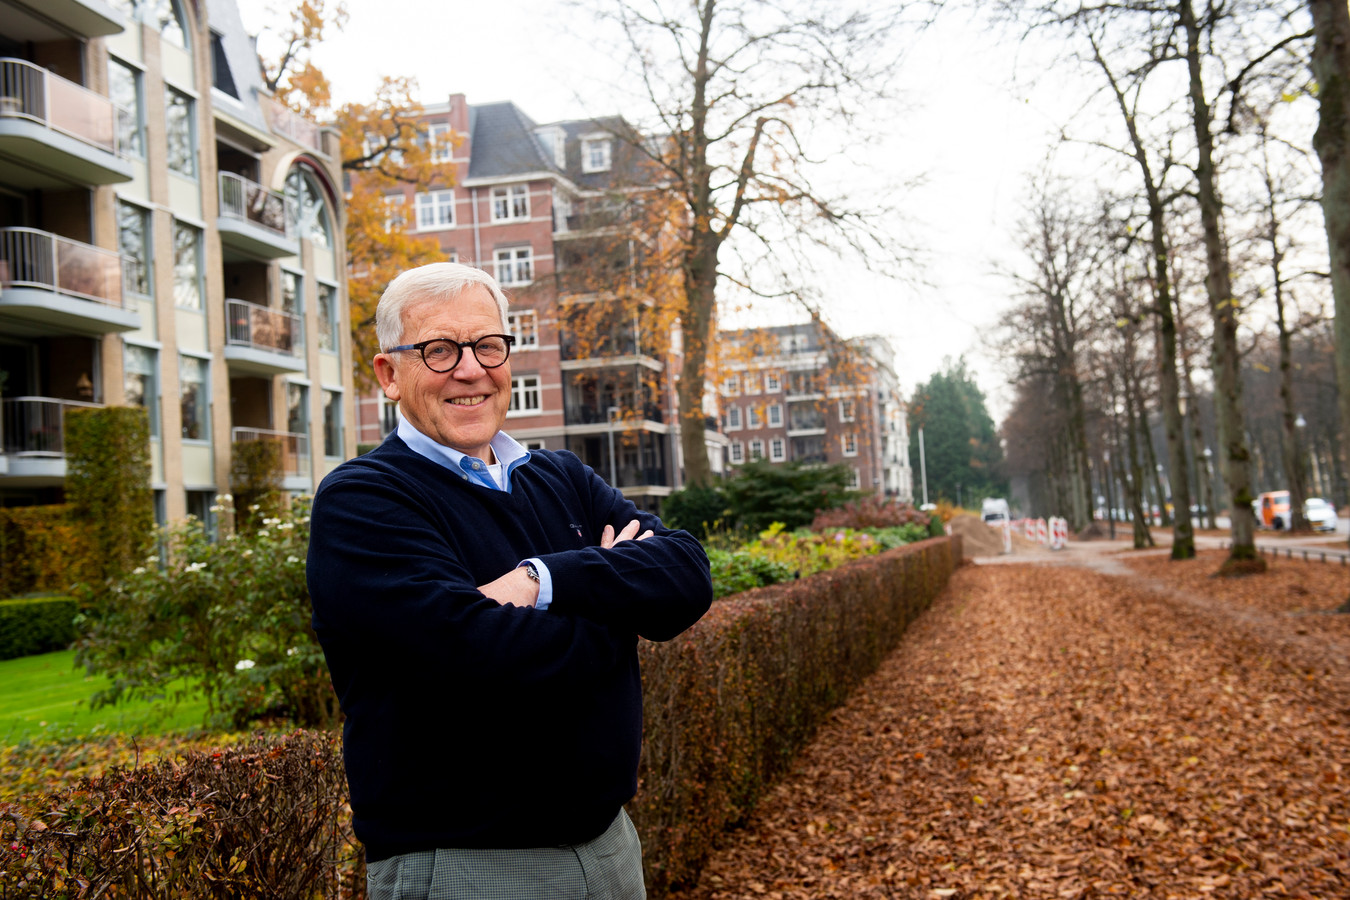 Makelaar Gerard Schurink uit Apeldoorn geniet sinds enkele weken van zijn pensioen.